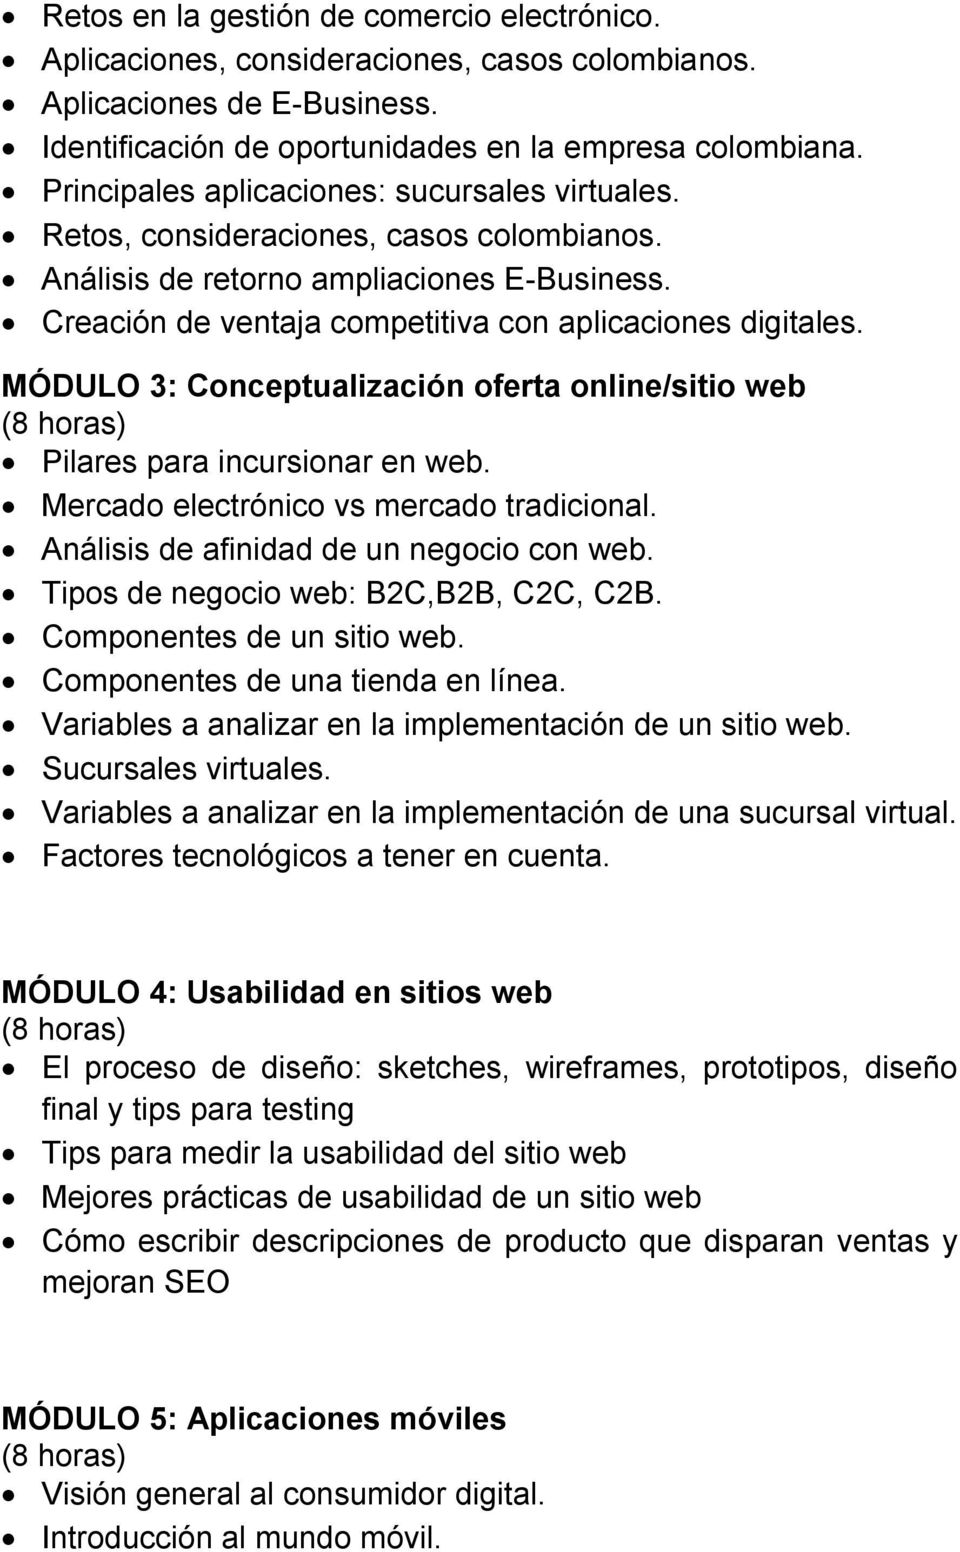 MÓDULO 3: Conceptualización oferta online/sitio web Pilares para incursionar en web. Mercado electrónico vs mercado tradicional. Análisis de afinidad de un negocio con web.